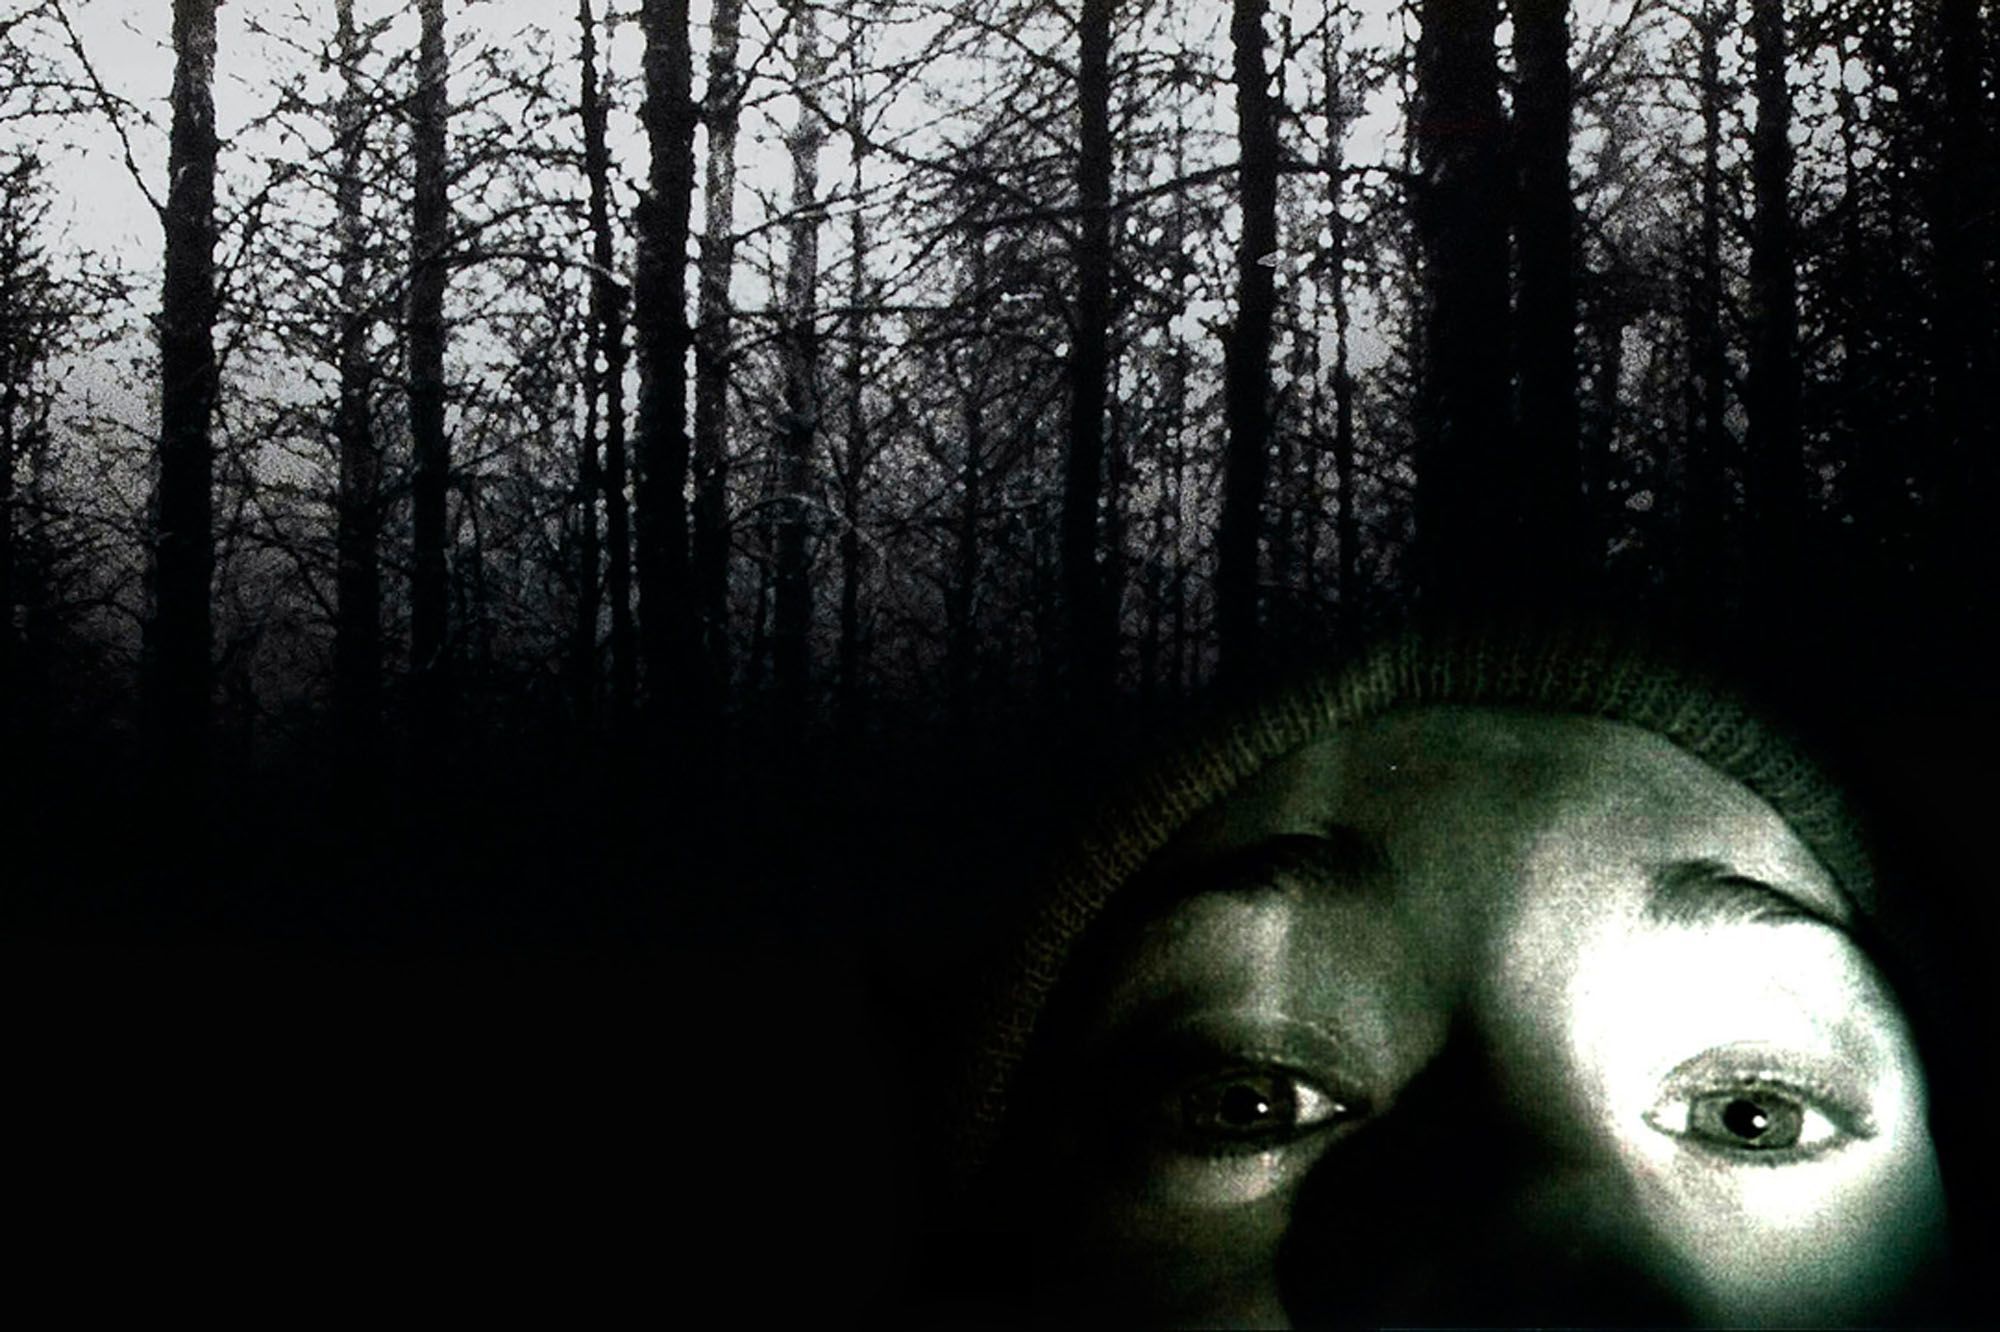 Le Projet Blair Witch" projeté dans un parc alsacien en pleine nuit noire